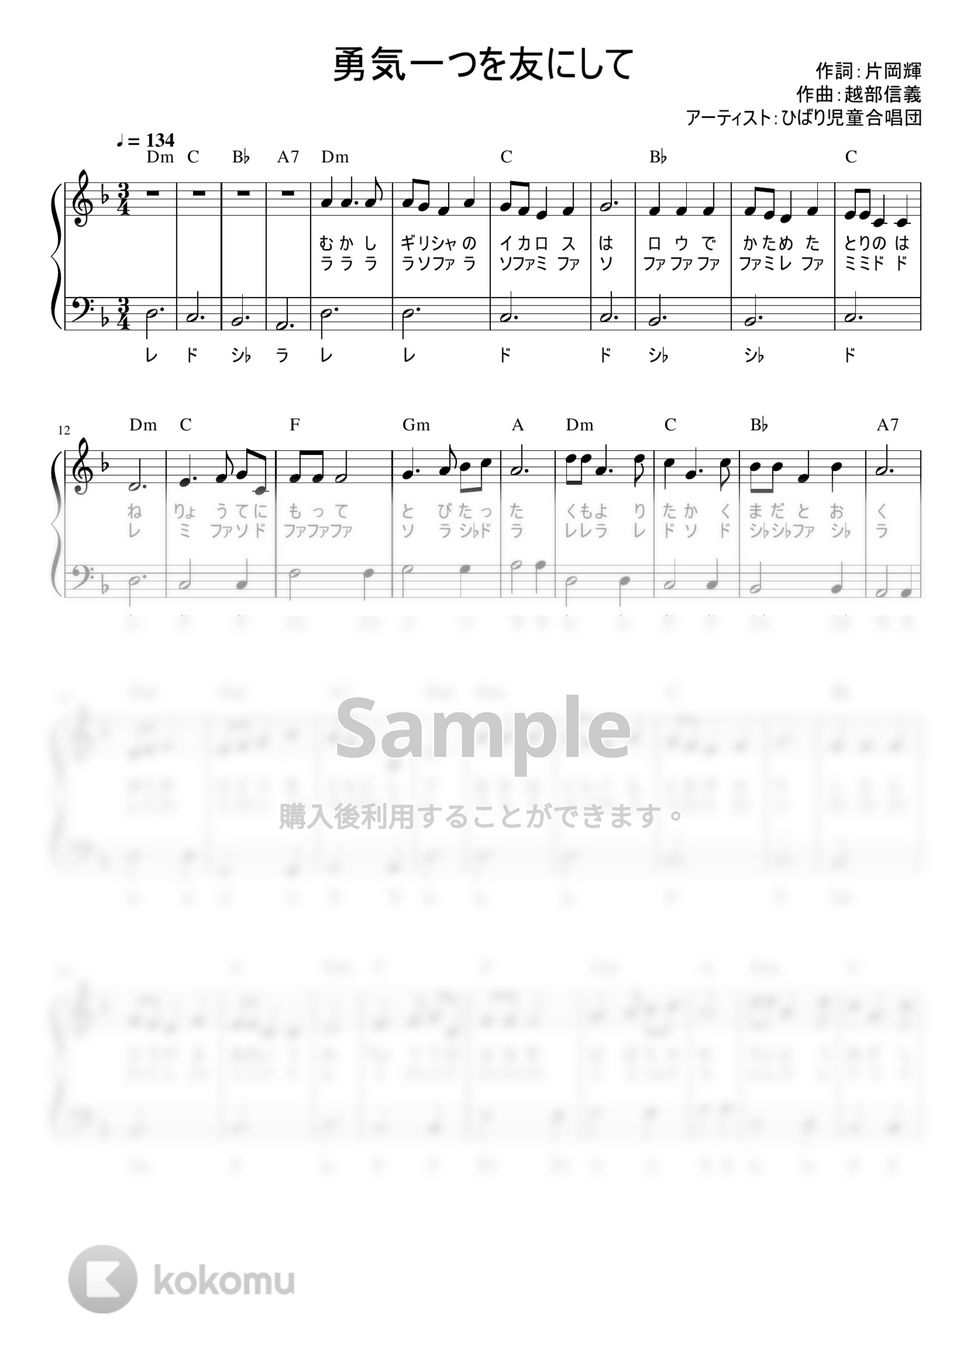 勇気一つを友にして (かんたん / 歌詞付き / ドレミ付き / 初心者) by piano.tokyo